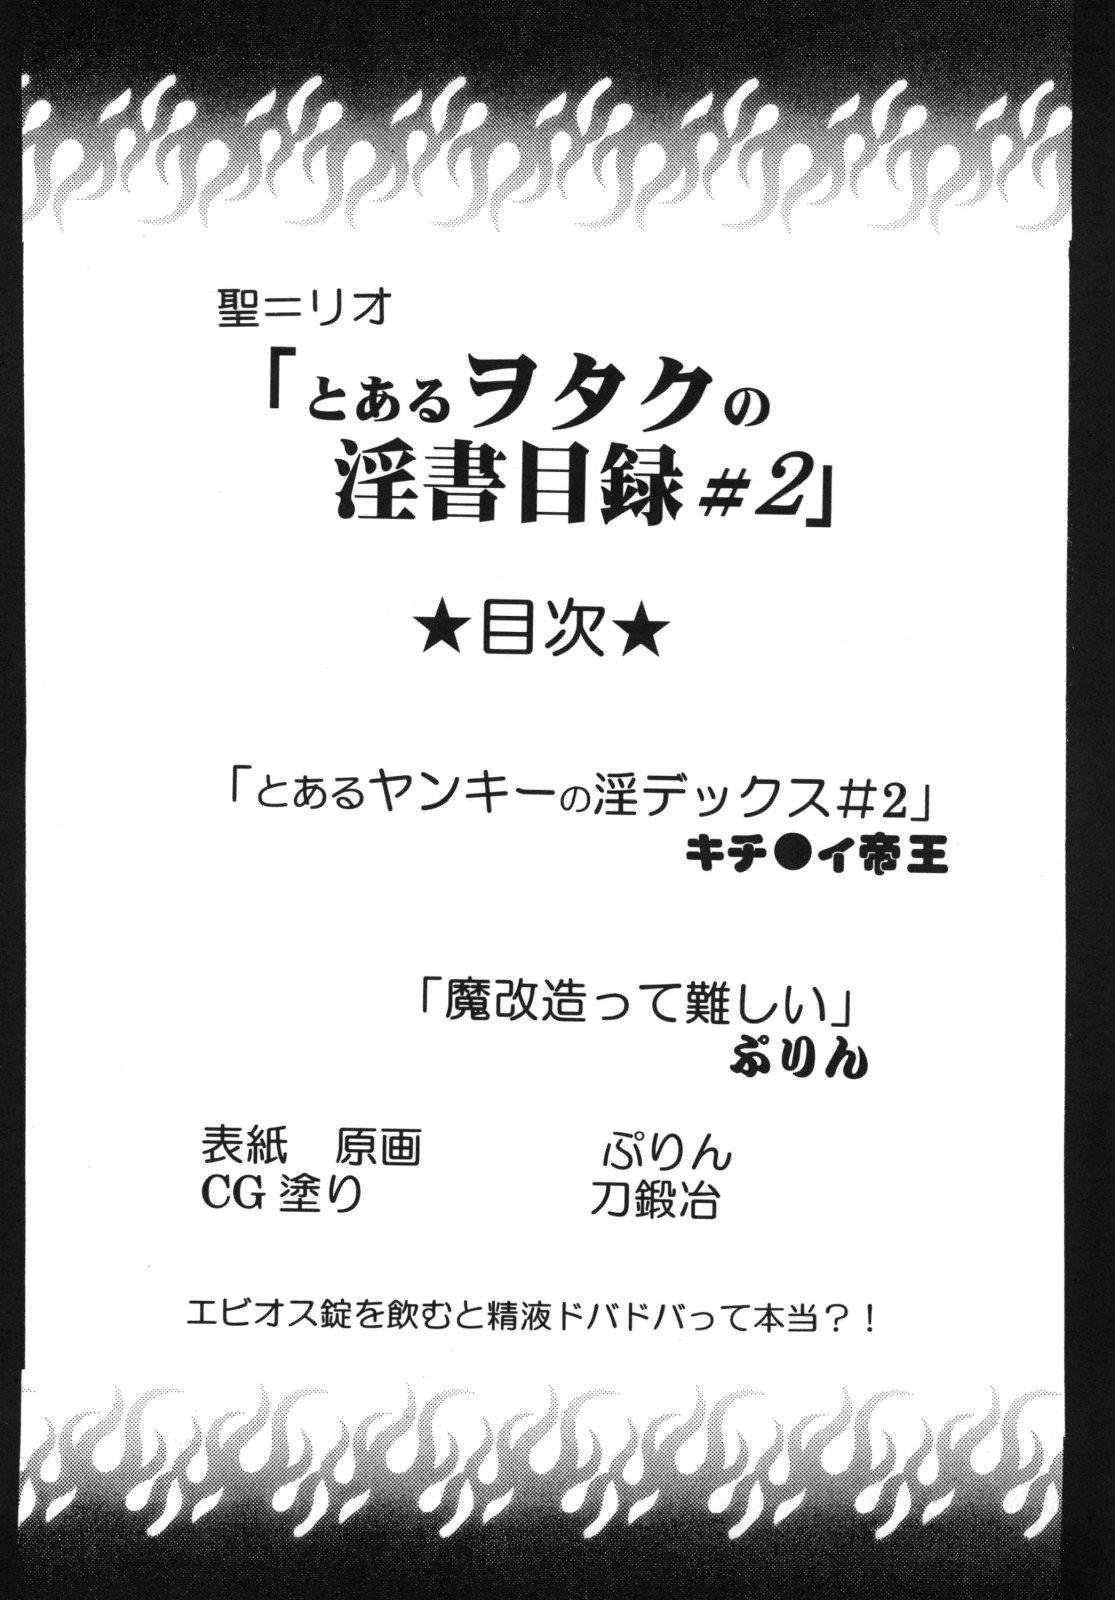 The Toaru Otaku no Index #2 - Toaru majutsu no index Linda - Page 4